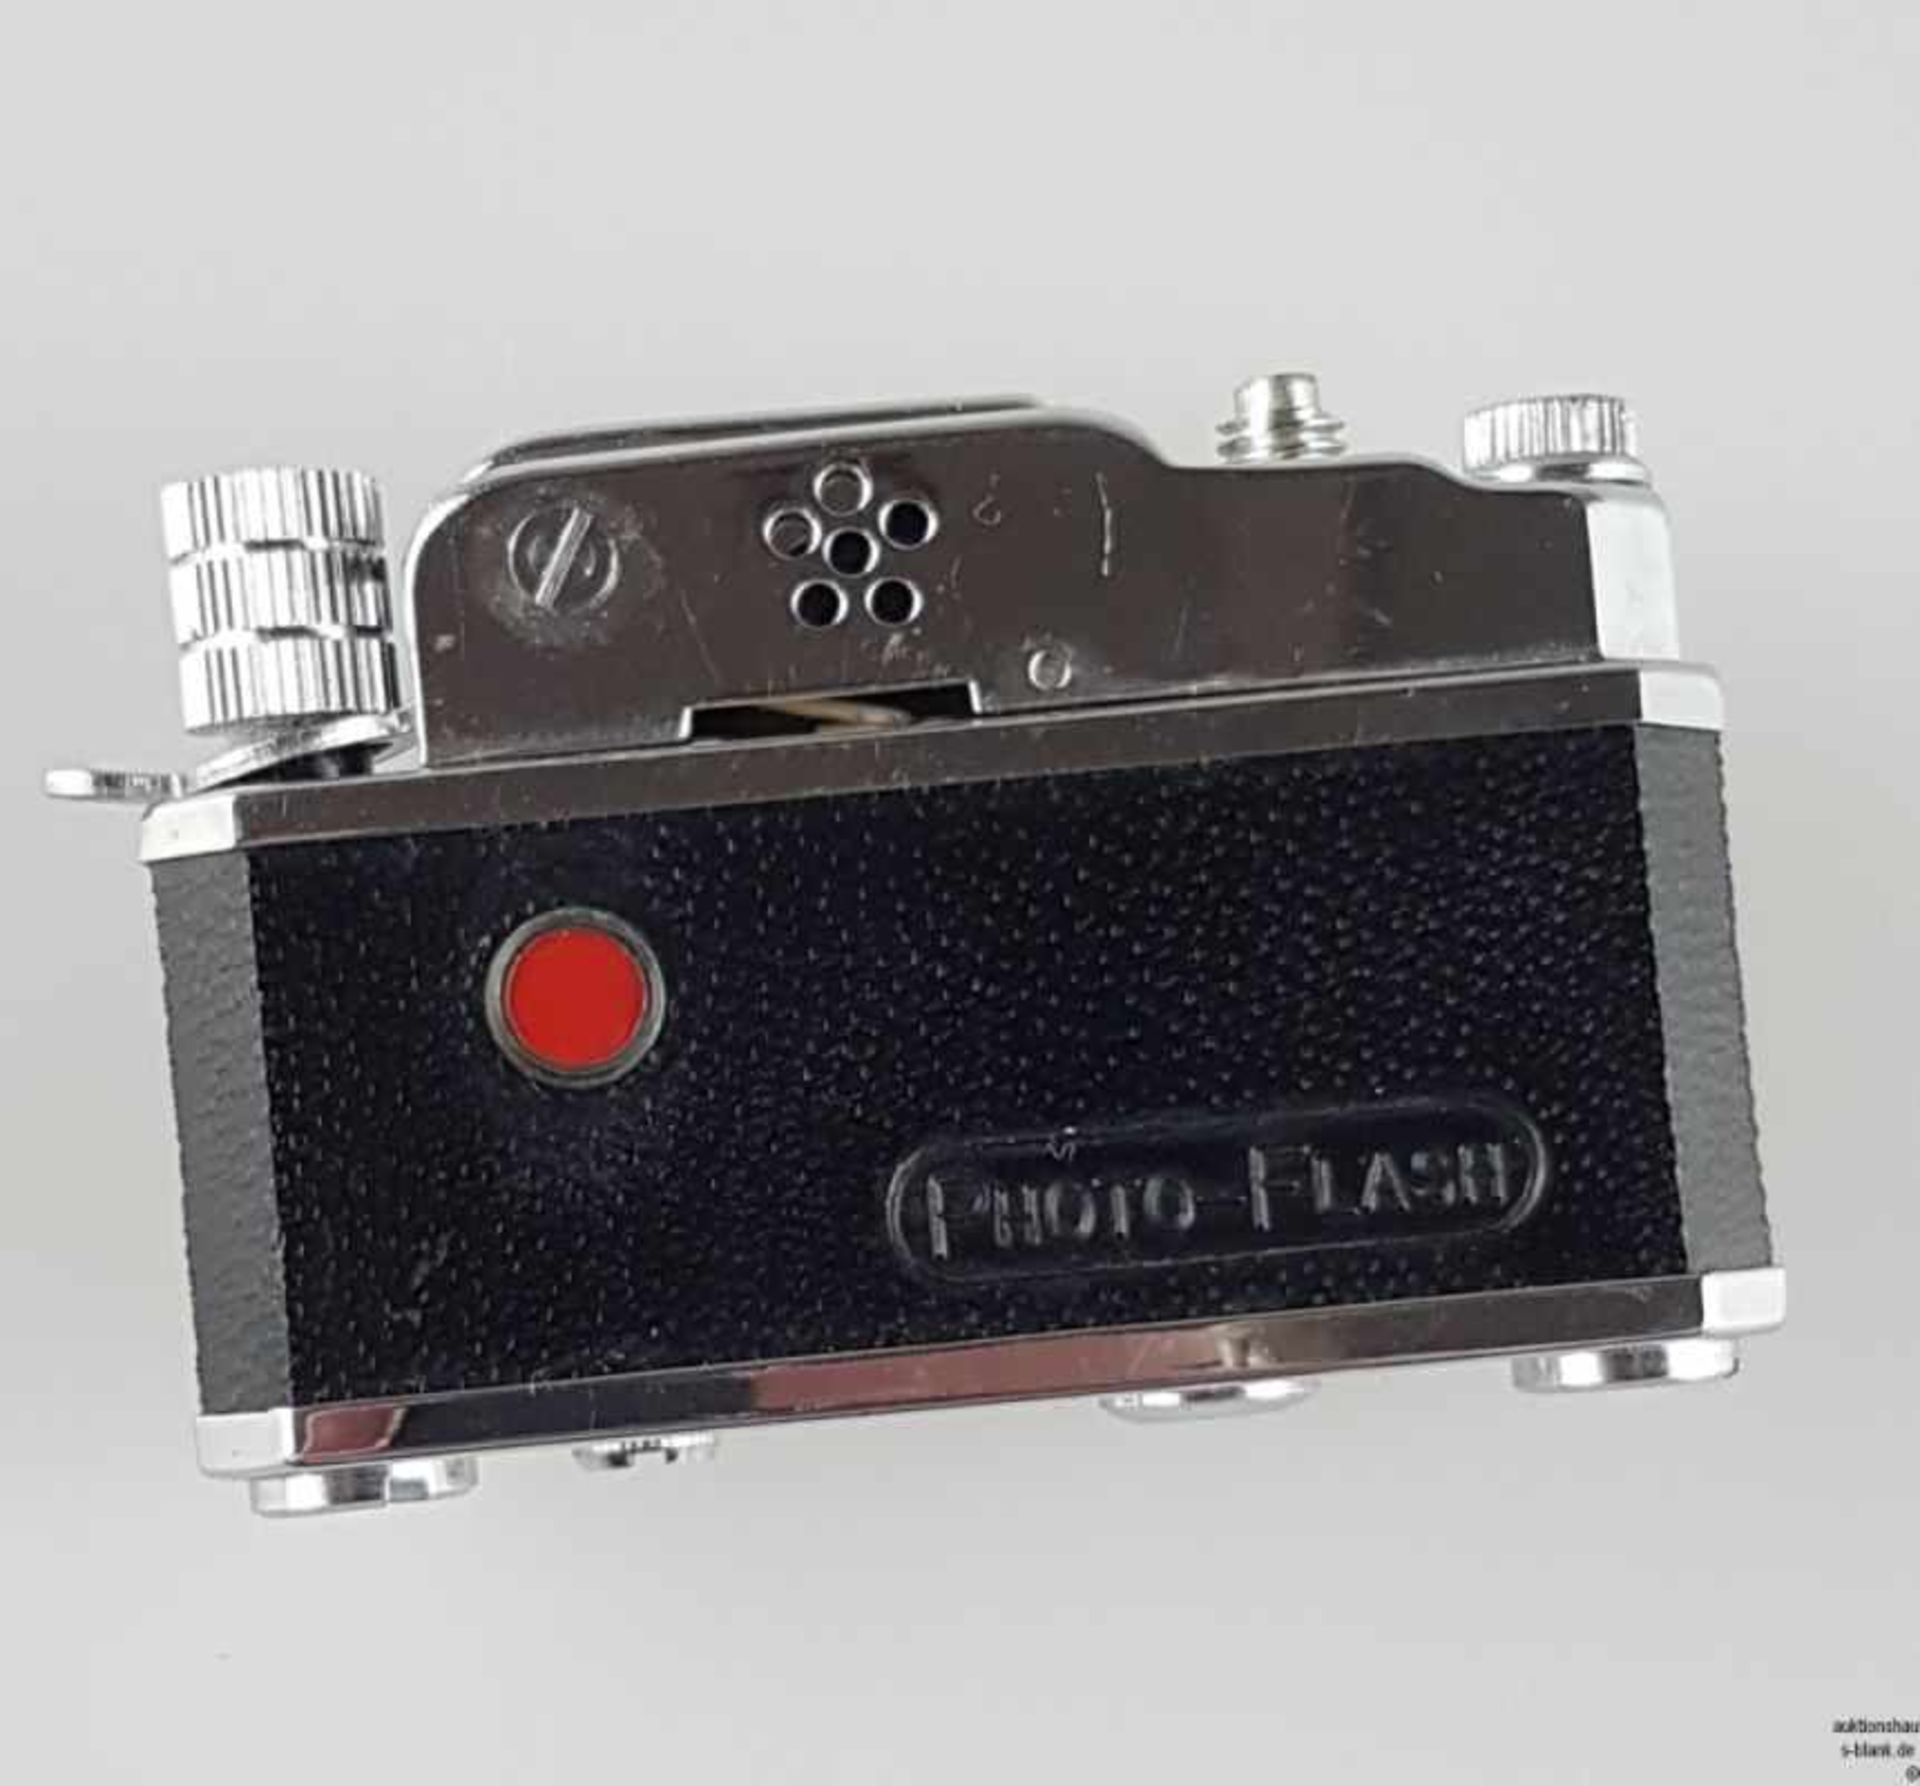 Feuerzeug - in Form einer Kamera, gem. "K.K.W. Camera Lighter",mit Kompass, mit Stativ und - Bild 3 aus 5